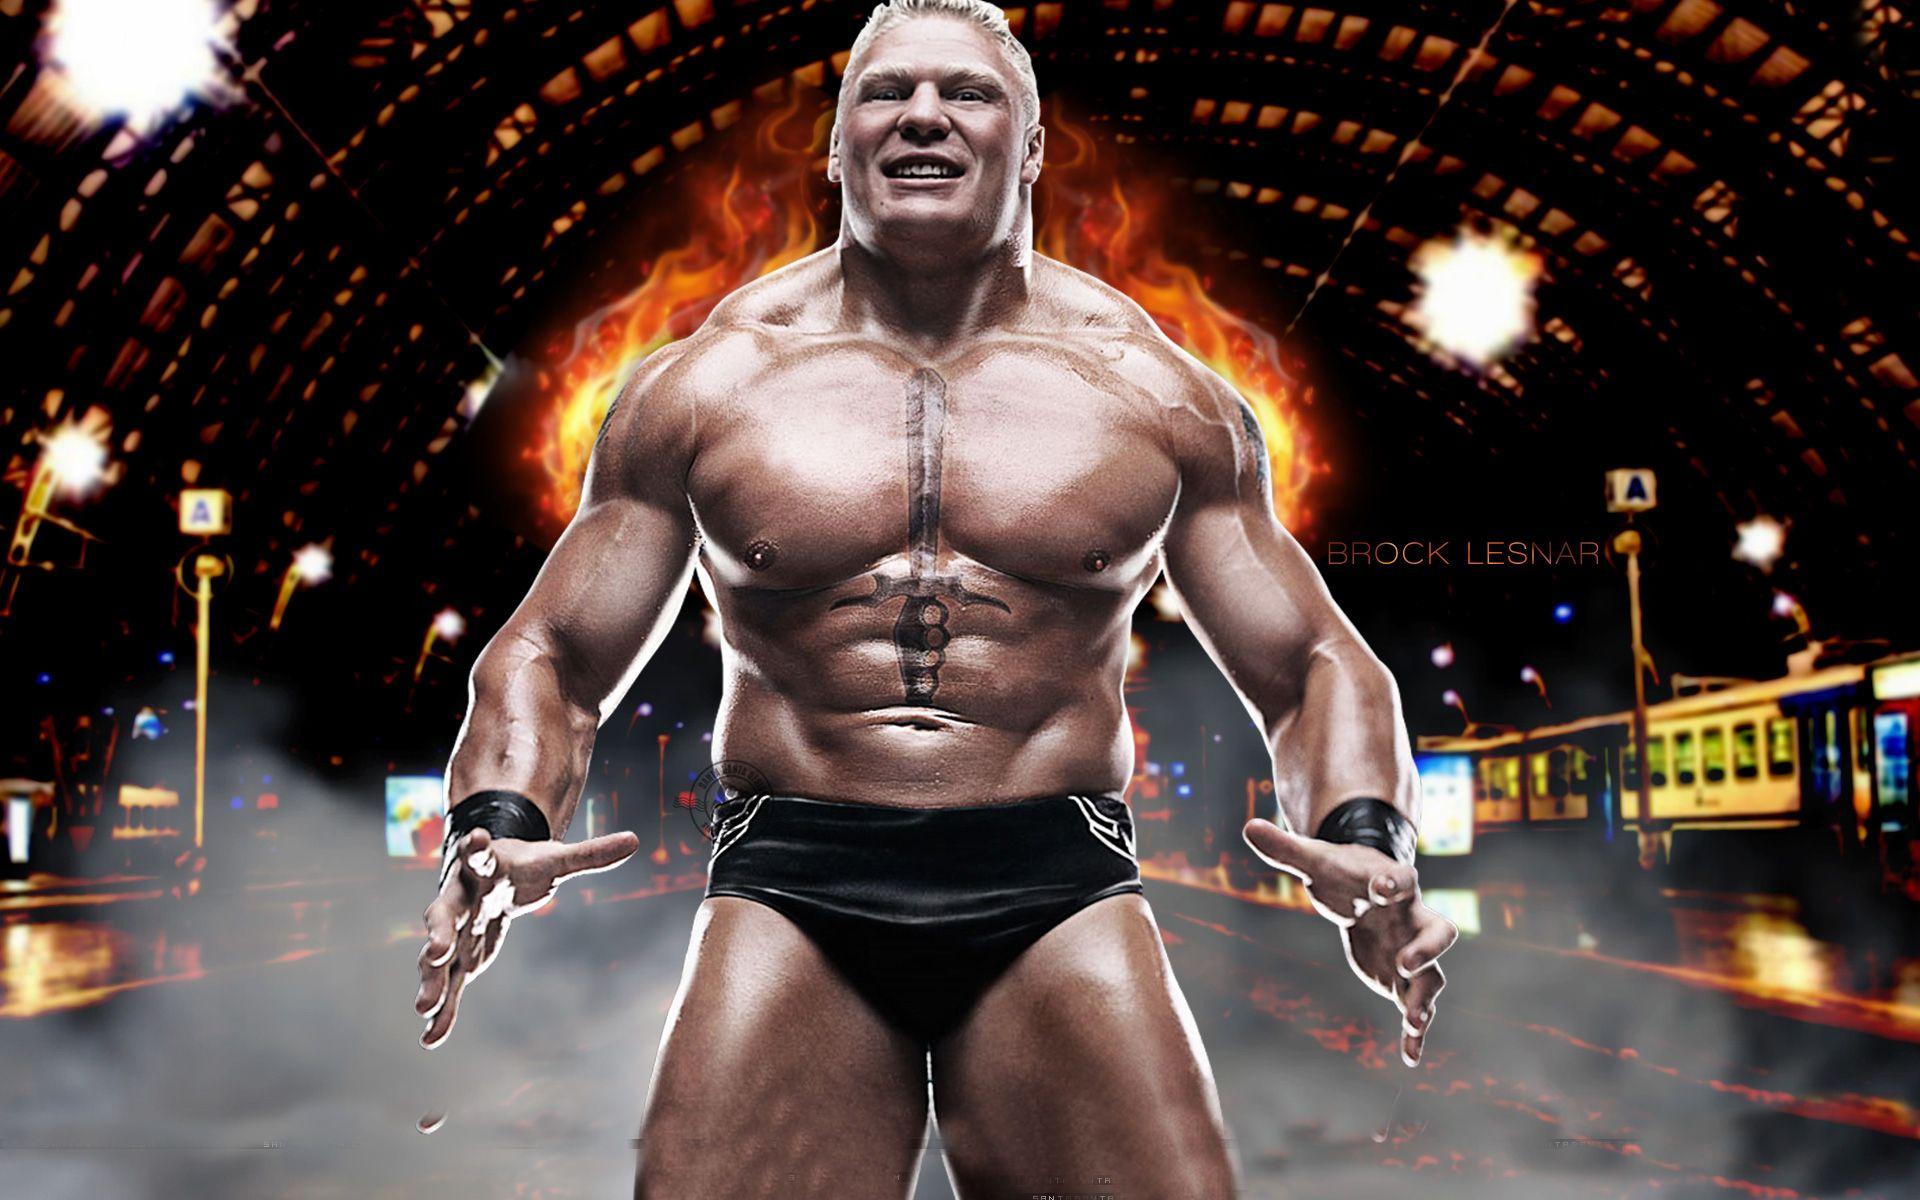 Brock Lesnar WWE 2015 Wallpaper 1024x768